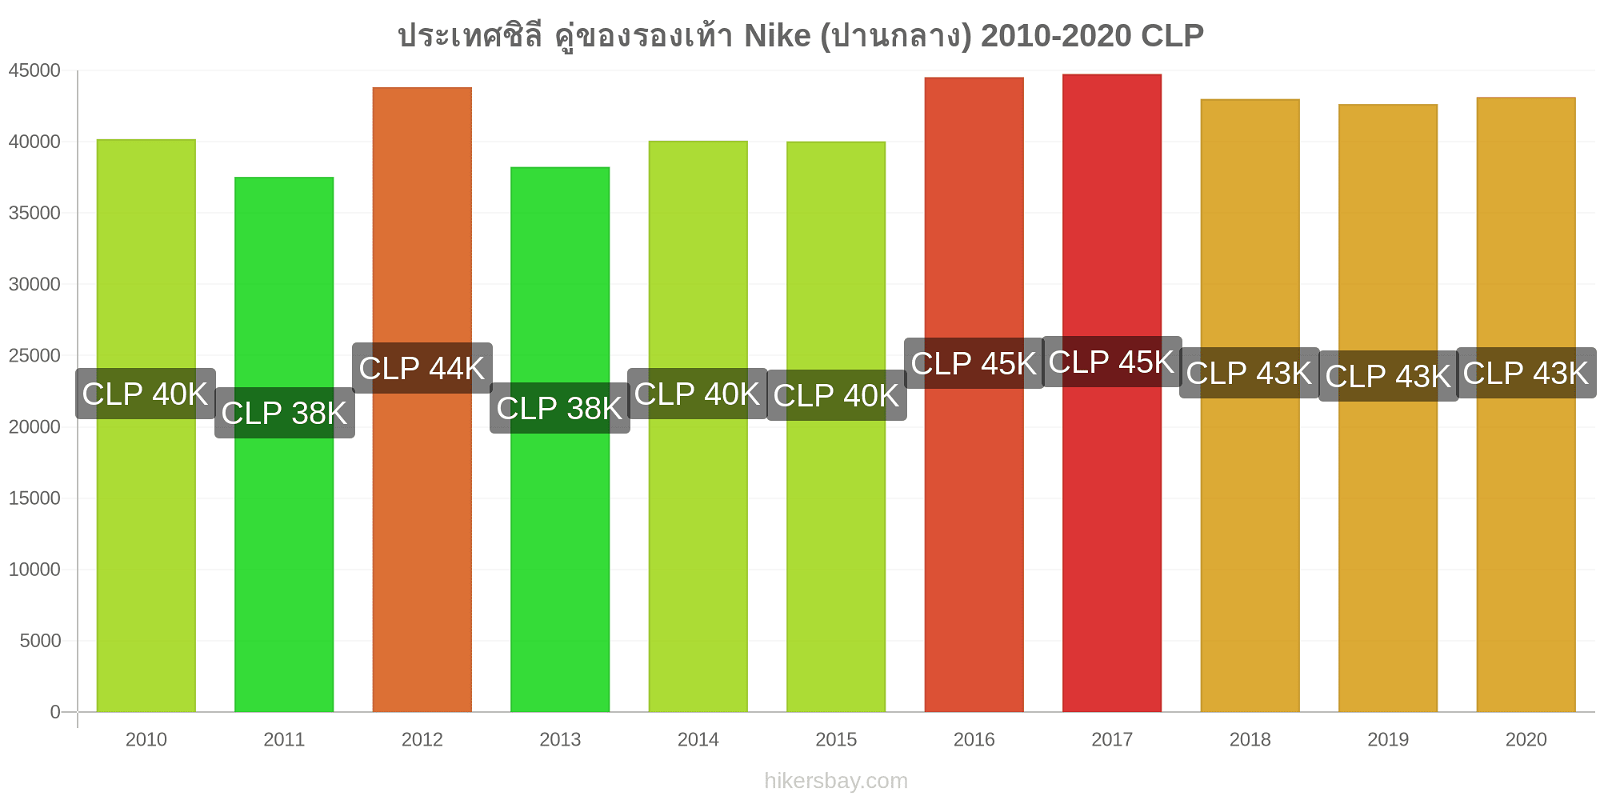 ประเทศชิลี การเปลี่ยนแปลงราคา คู่ของรองเท้า Nike (ปานกลาง) hikersbay.com